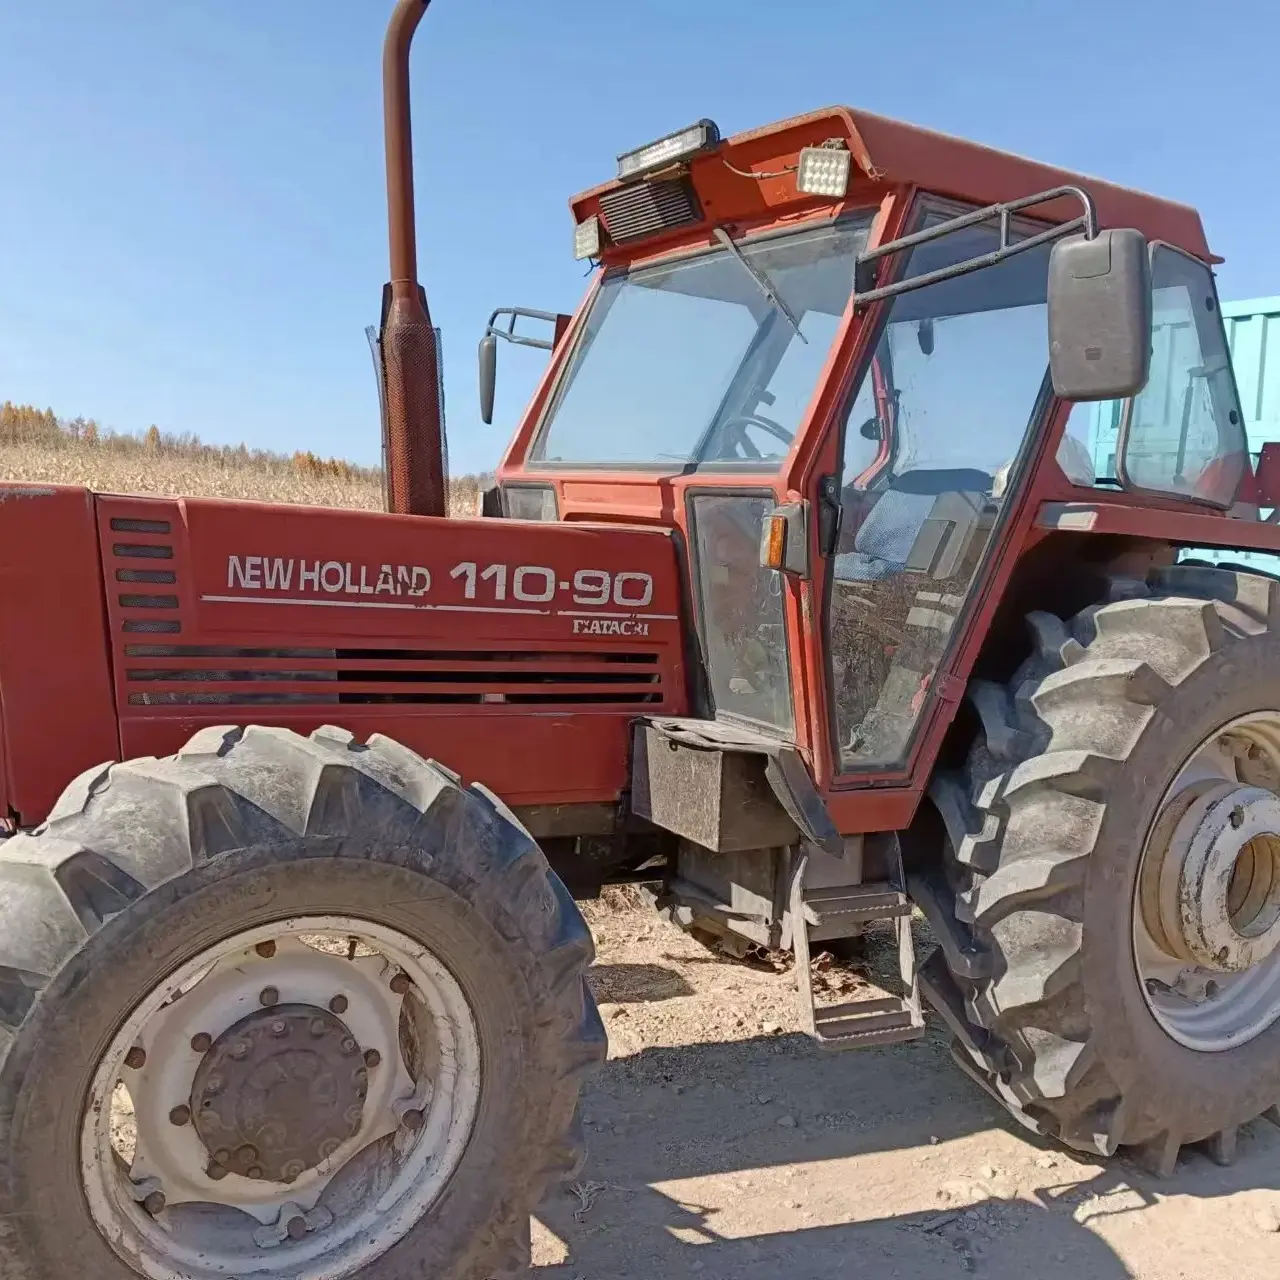 Traktor Fiat bekas 110-90 buatan Italia peralatan pertanian traktor roda mesin pertanian maquinas agricolas